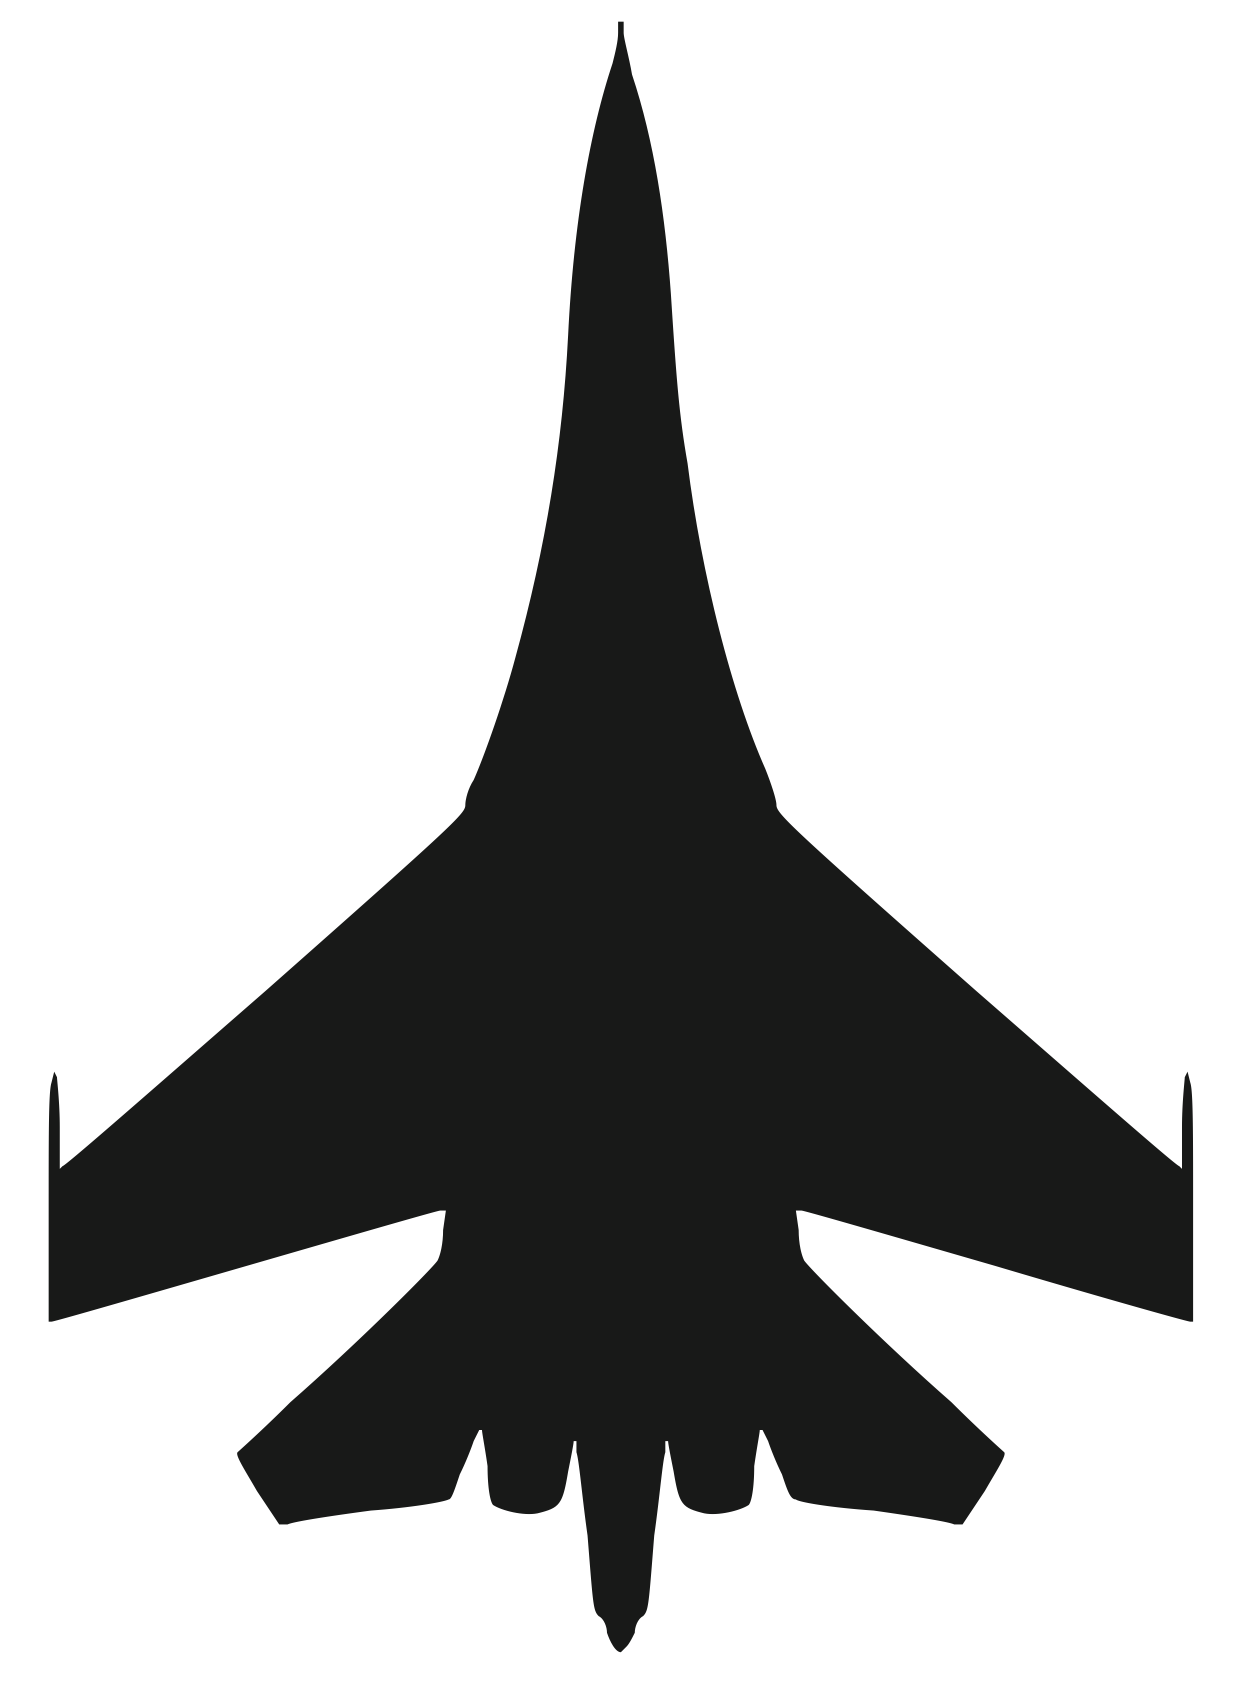 Su-27 Silhouette